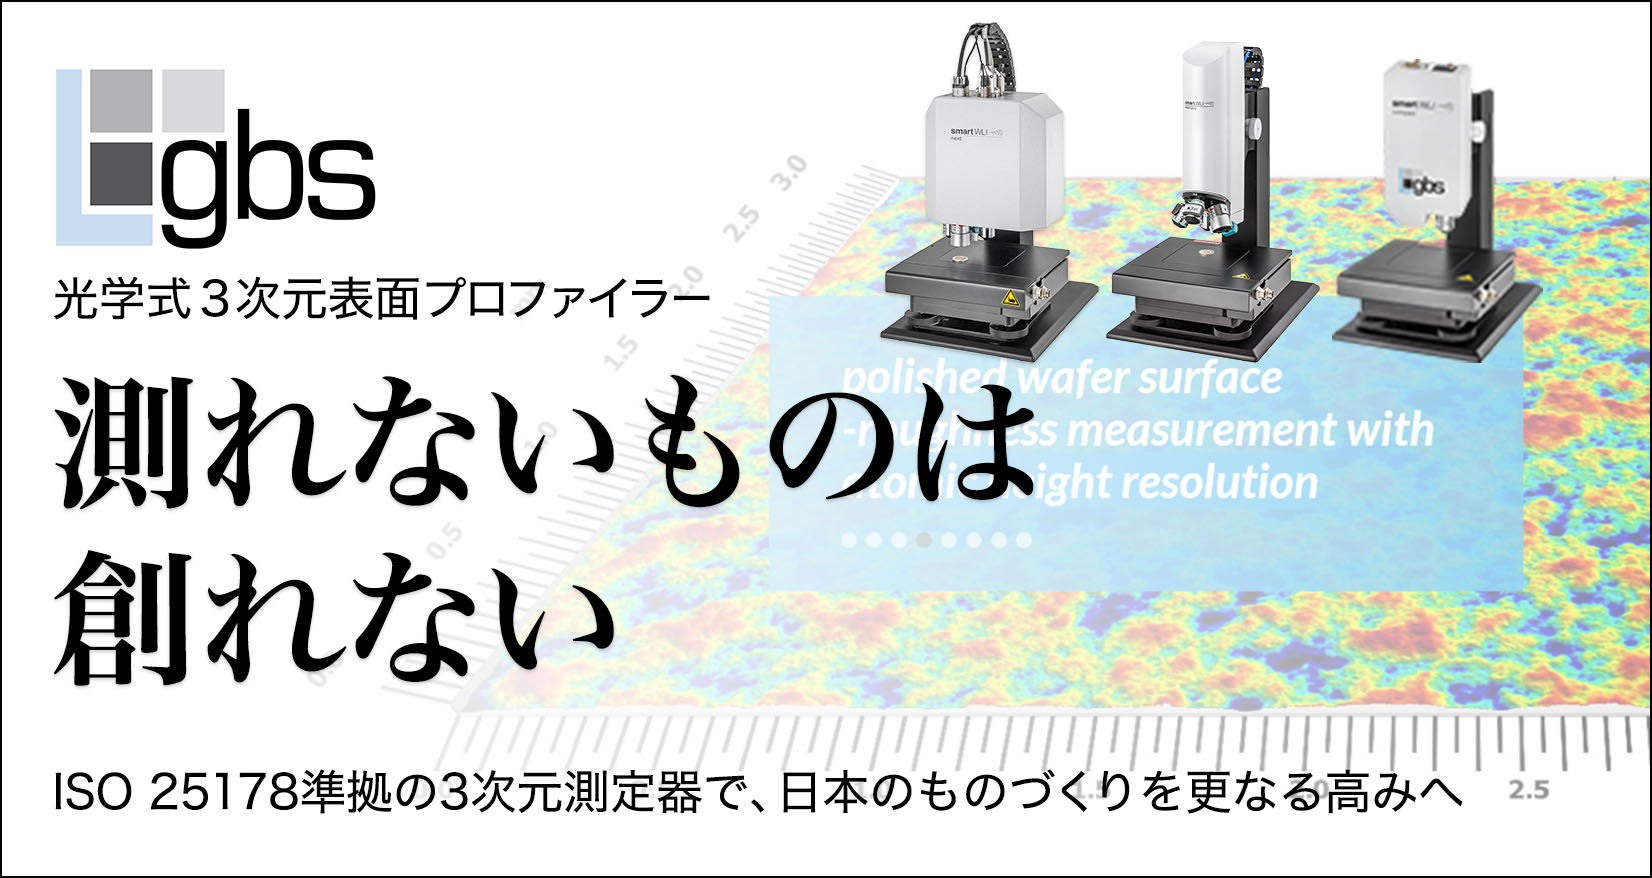 gbs 光学式3次元表面プロファイラー 測れないものは創れない ISO 25178準拠の3次元測定器で、日本のものづくりを更なる高みへ